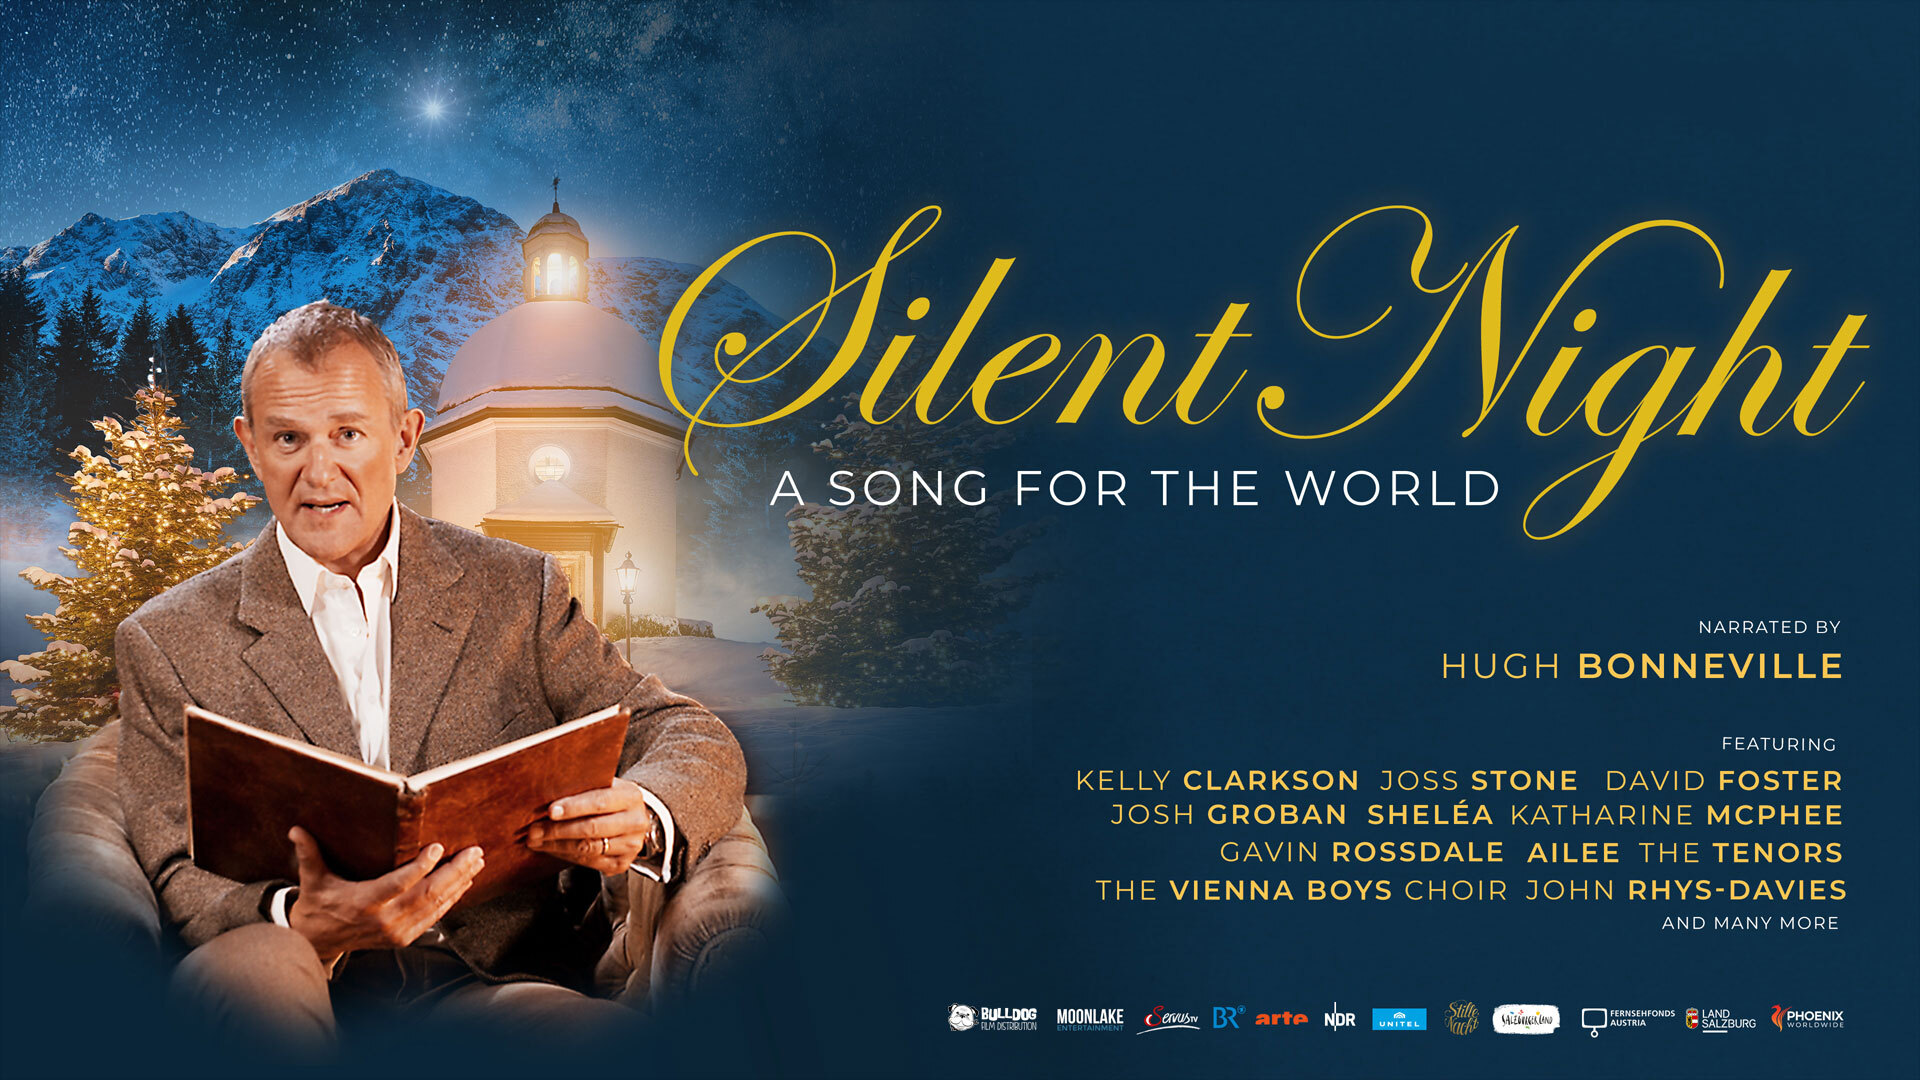 მდუმარე ღამე : სიმღერა მსოფლიოსთვის / Silent Night: A Song for the World